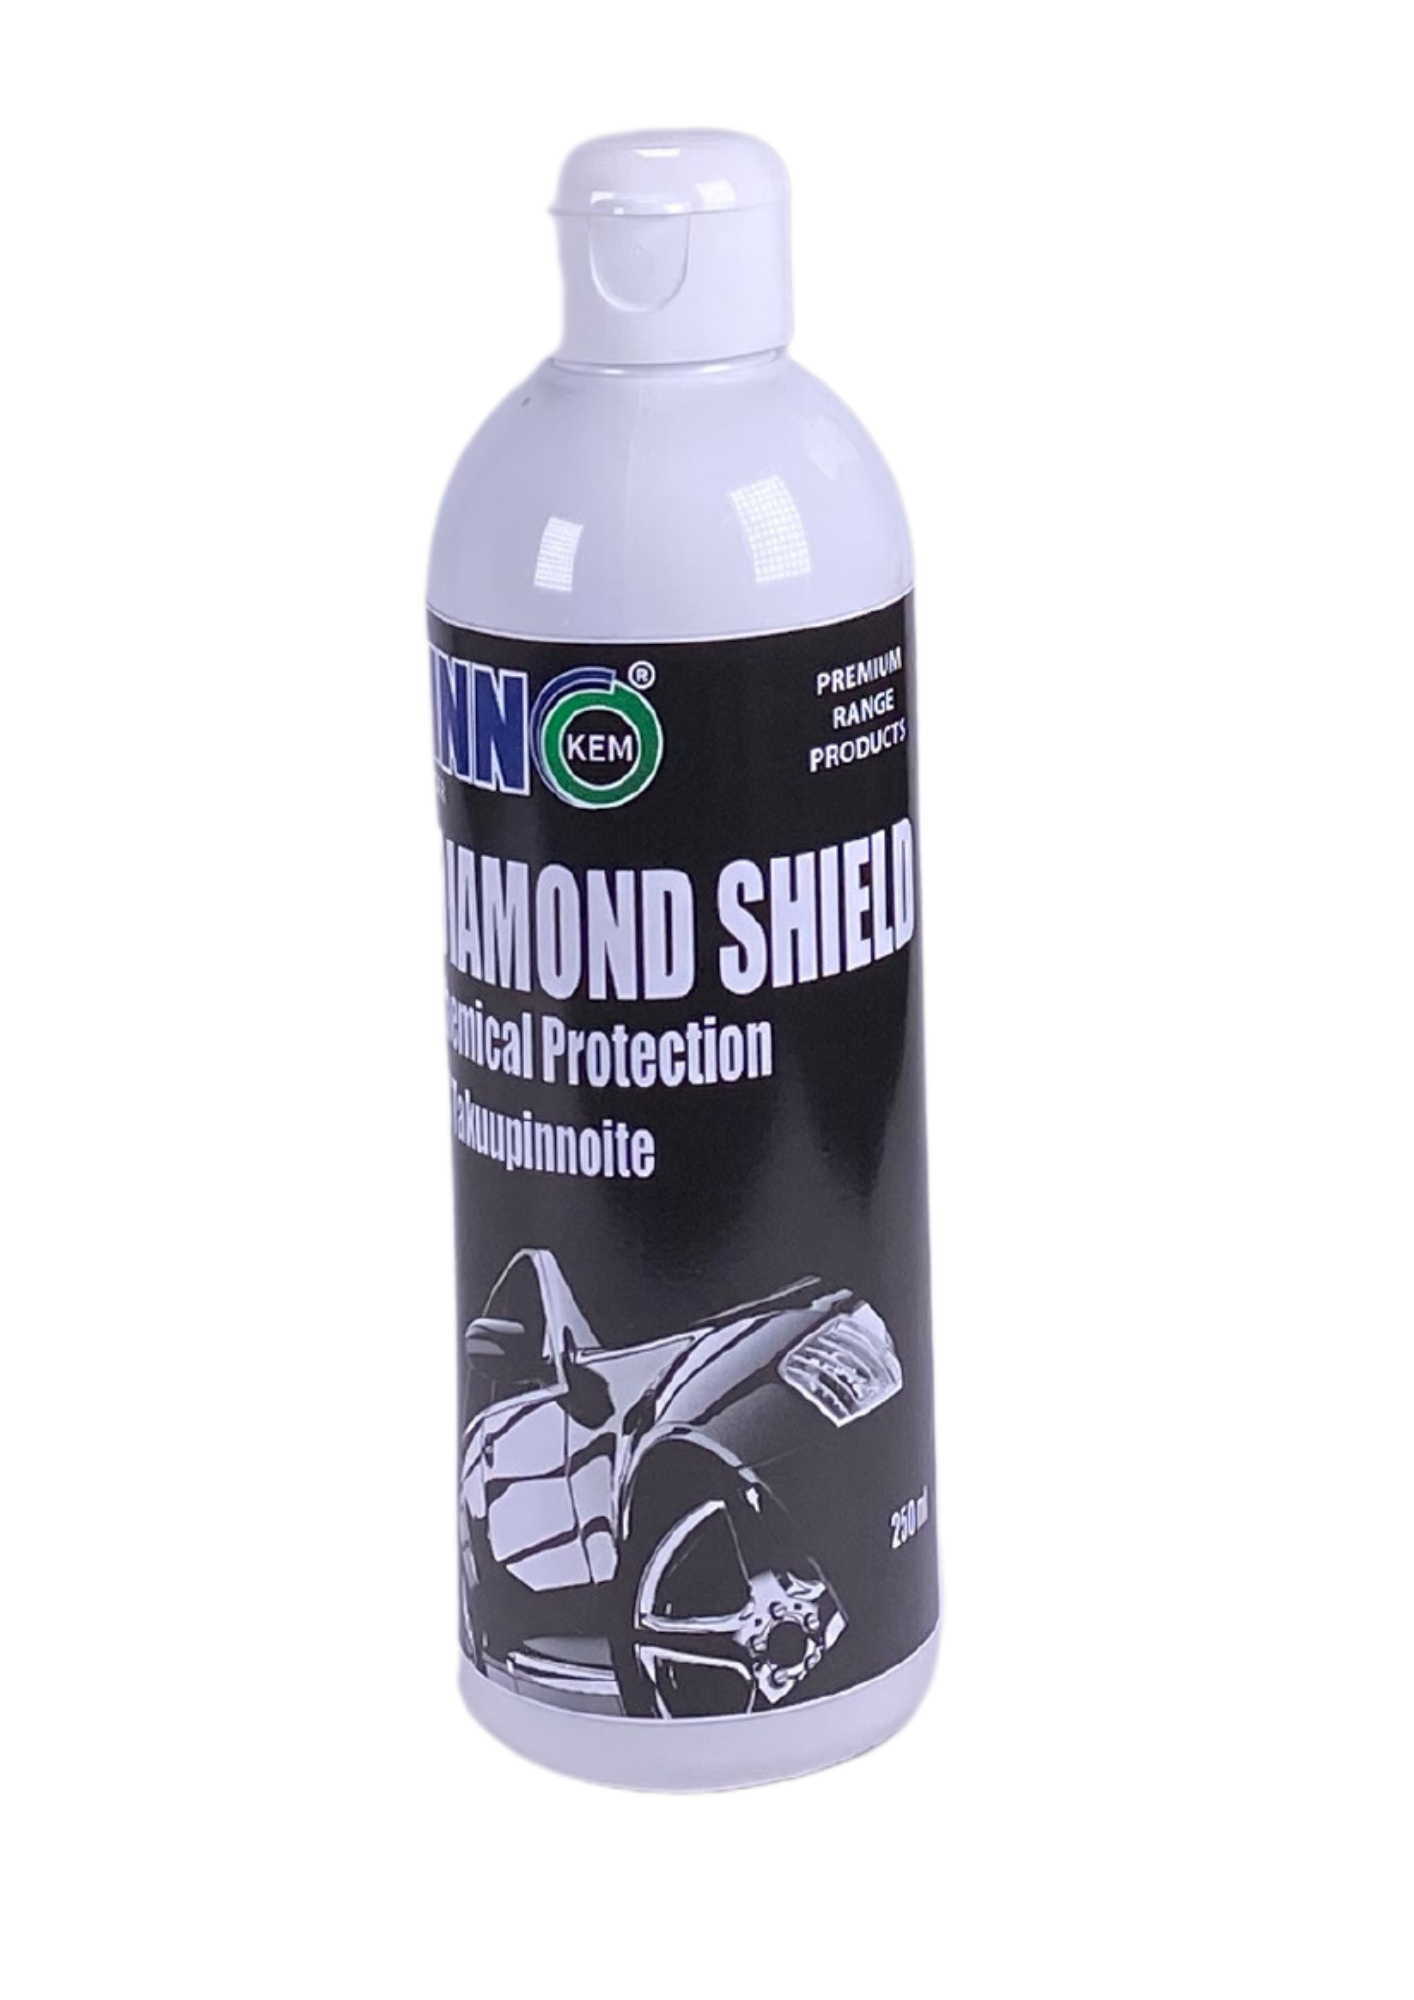 innokem diamond shield coating 2 x 250ml